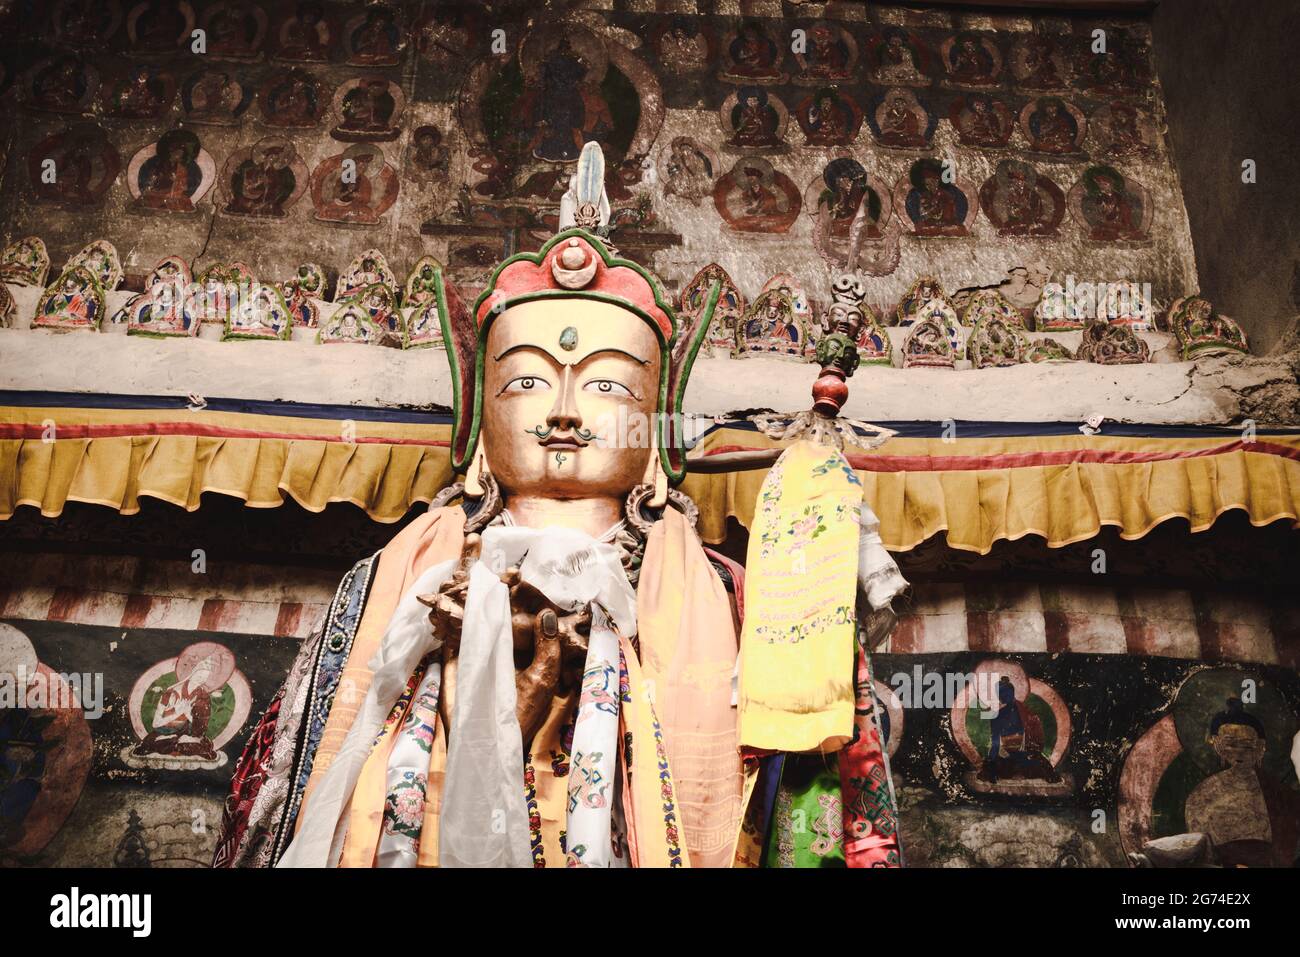 Statue d'or de padma sambawa, Padmasambhava dans un monastère tibétain avec une vieille peinture religieuse bouddhiste en arrière-plan. Inde, Himachal Pradesh. Banque D'Images